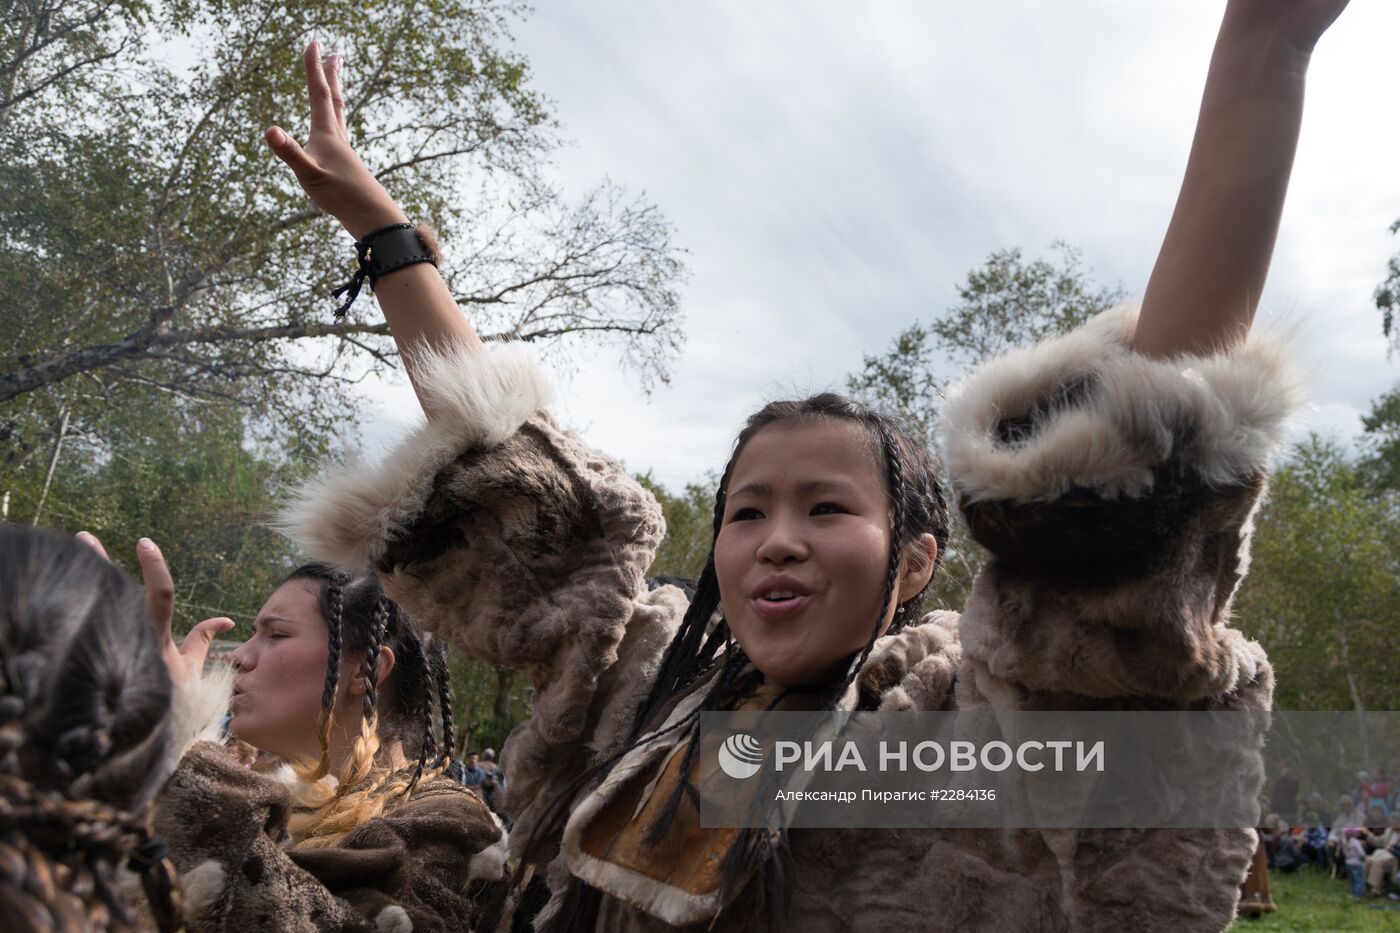 Обрядовый праздник "Алхалалалай" на Камчатке